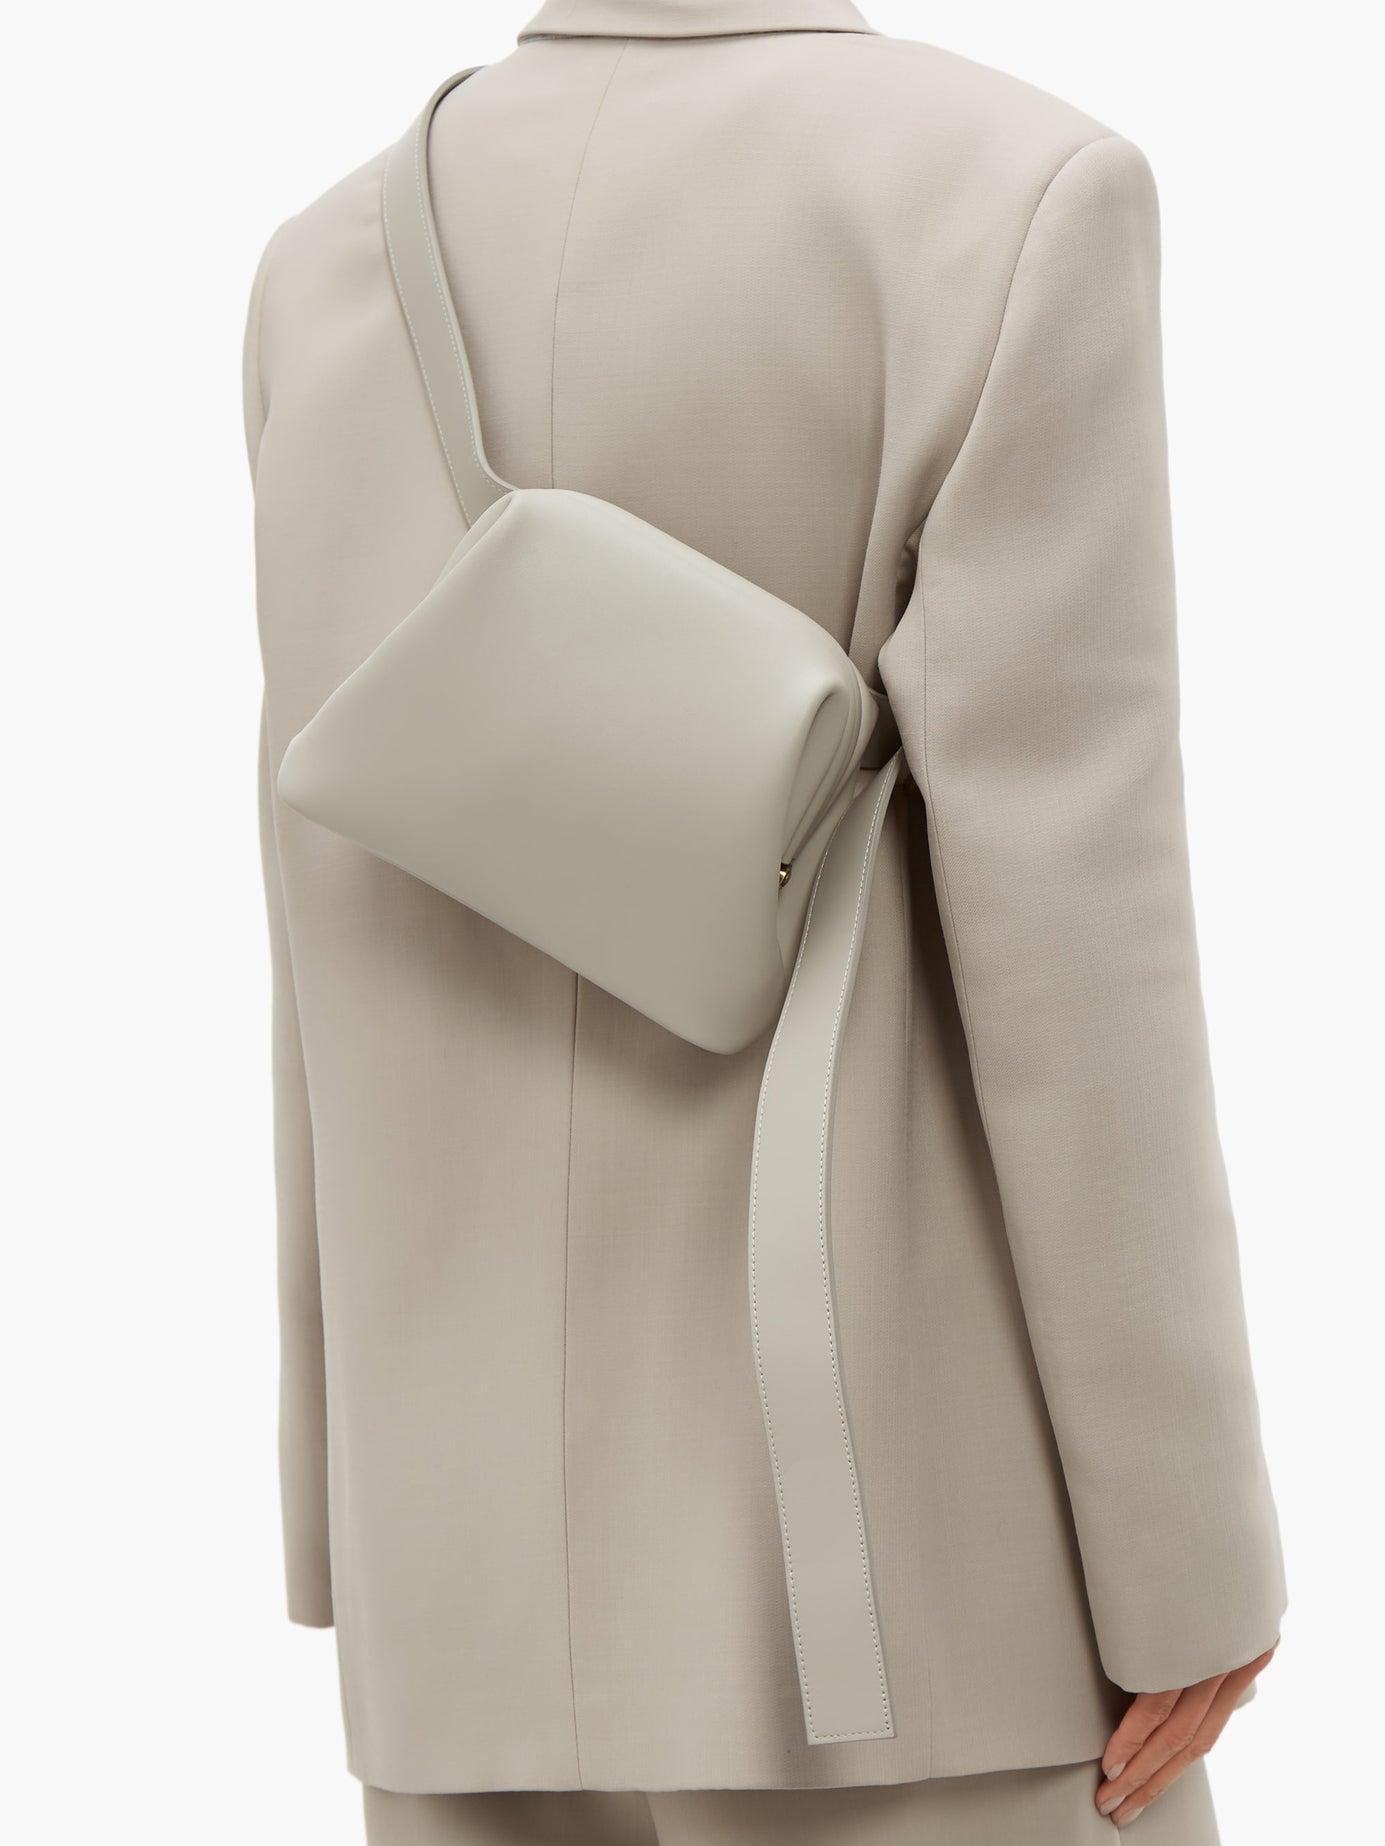 OSOI Brot Mini Leather Cross-body Bag in Gray | Lyst